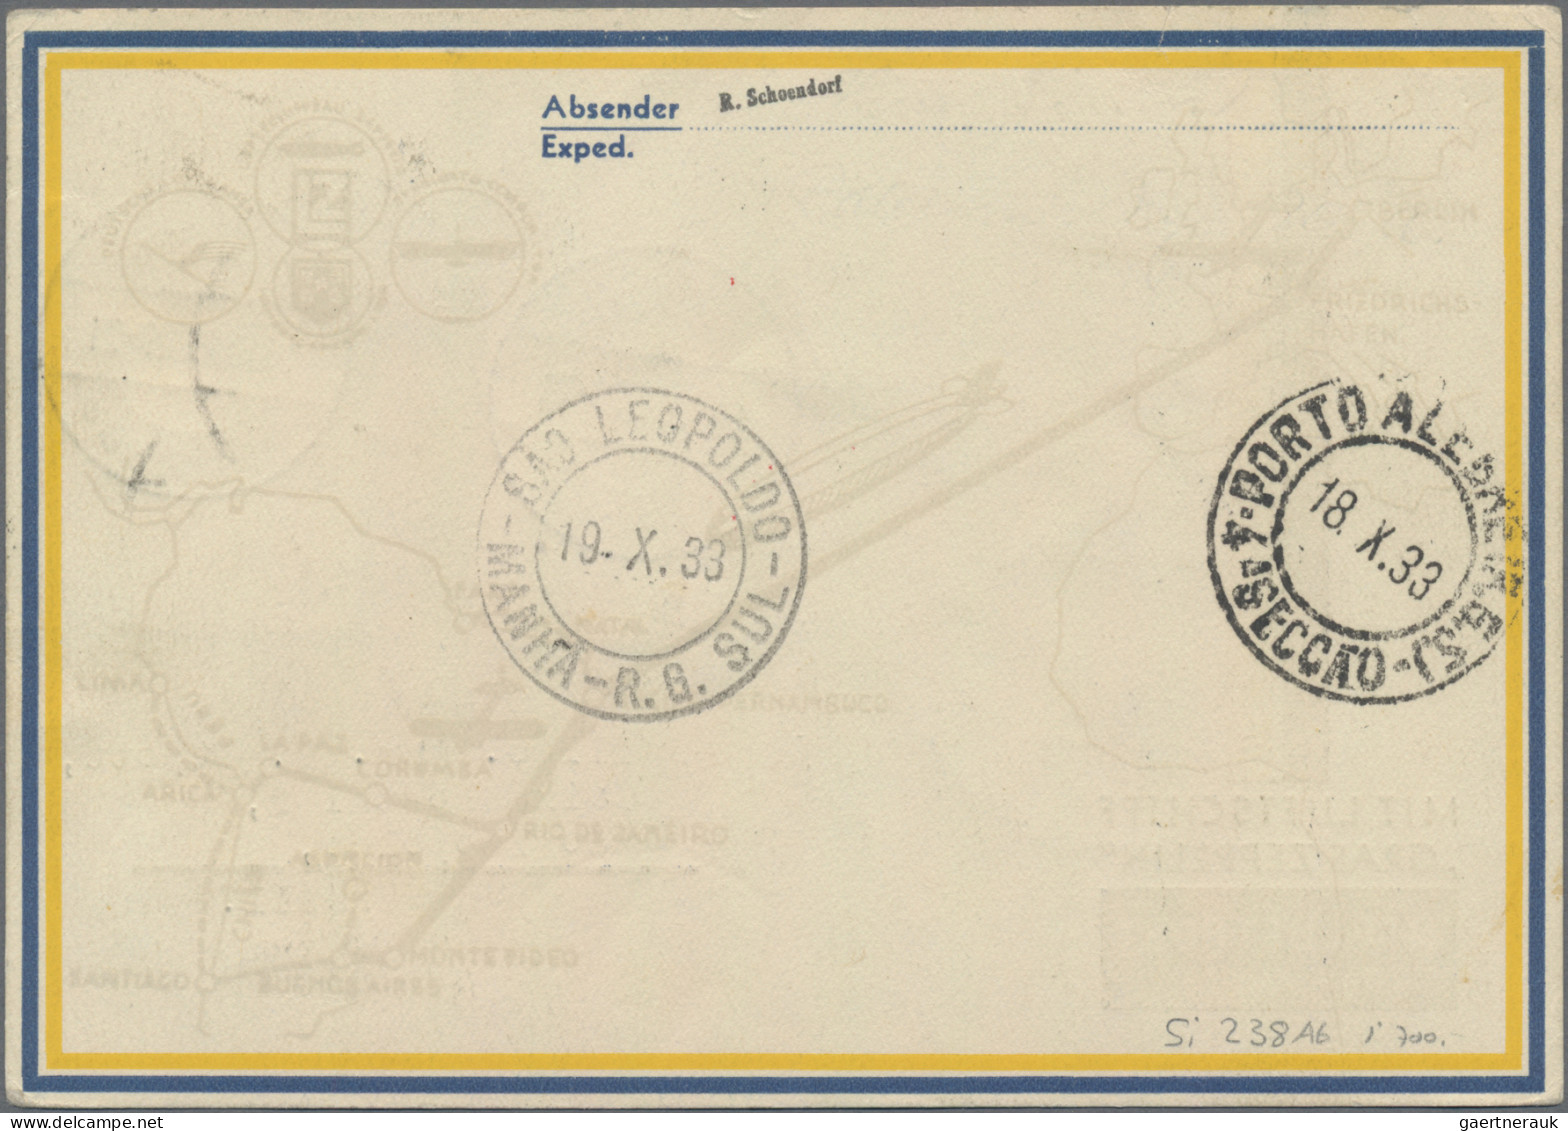 Zeppelin Mail - Germany: 1933, Chicagofahrt Bis Rio Auf Zeppelin-Vordruck-Karte - Luft- Und Zeppelinpost